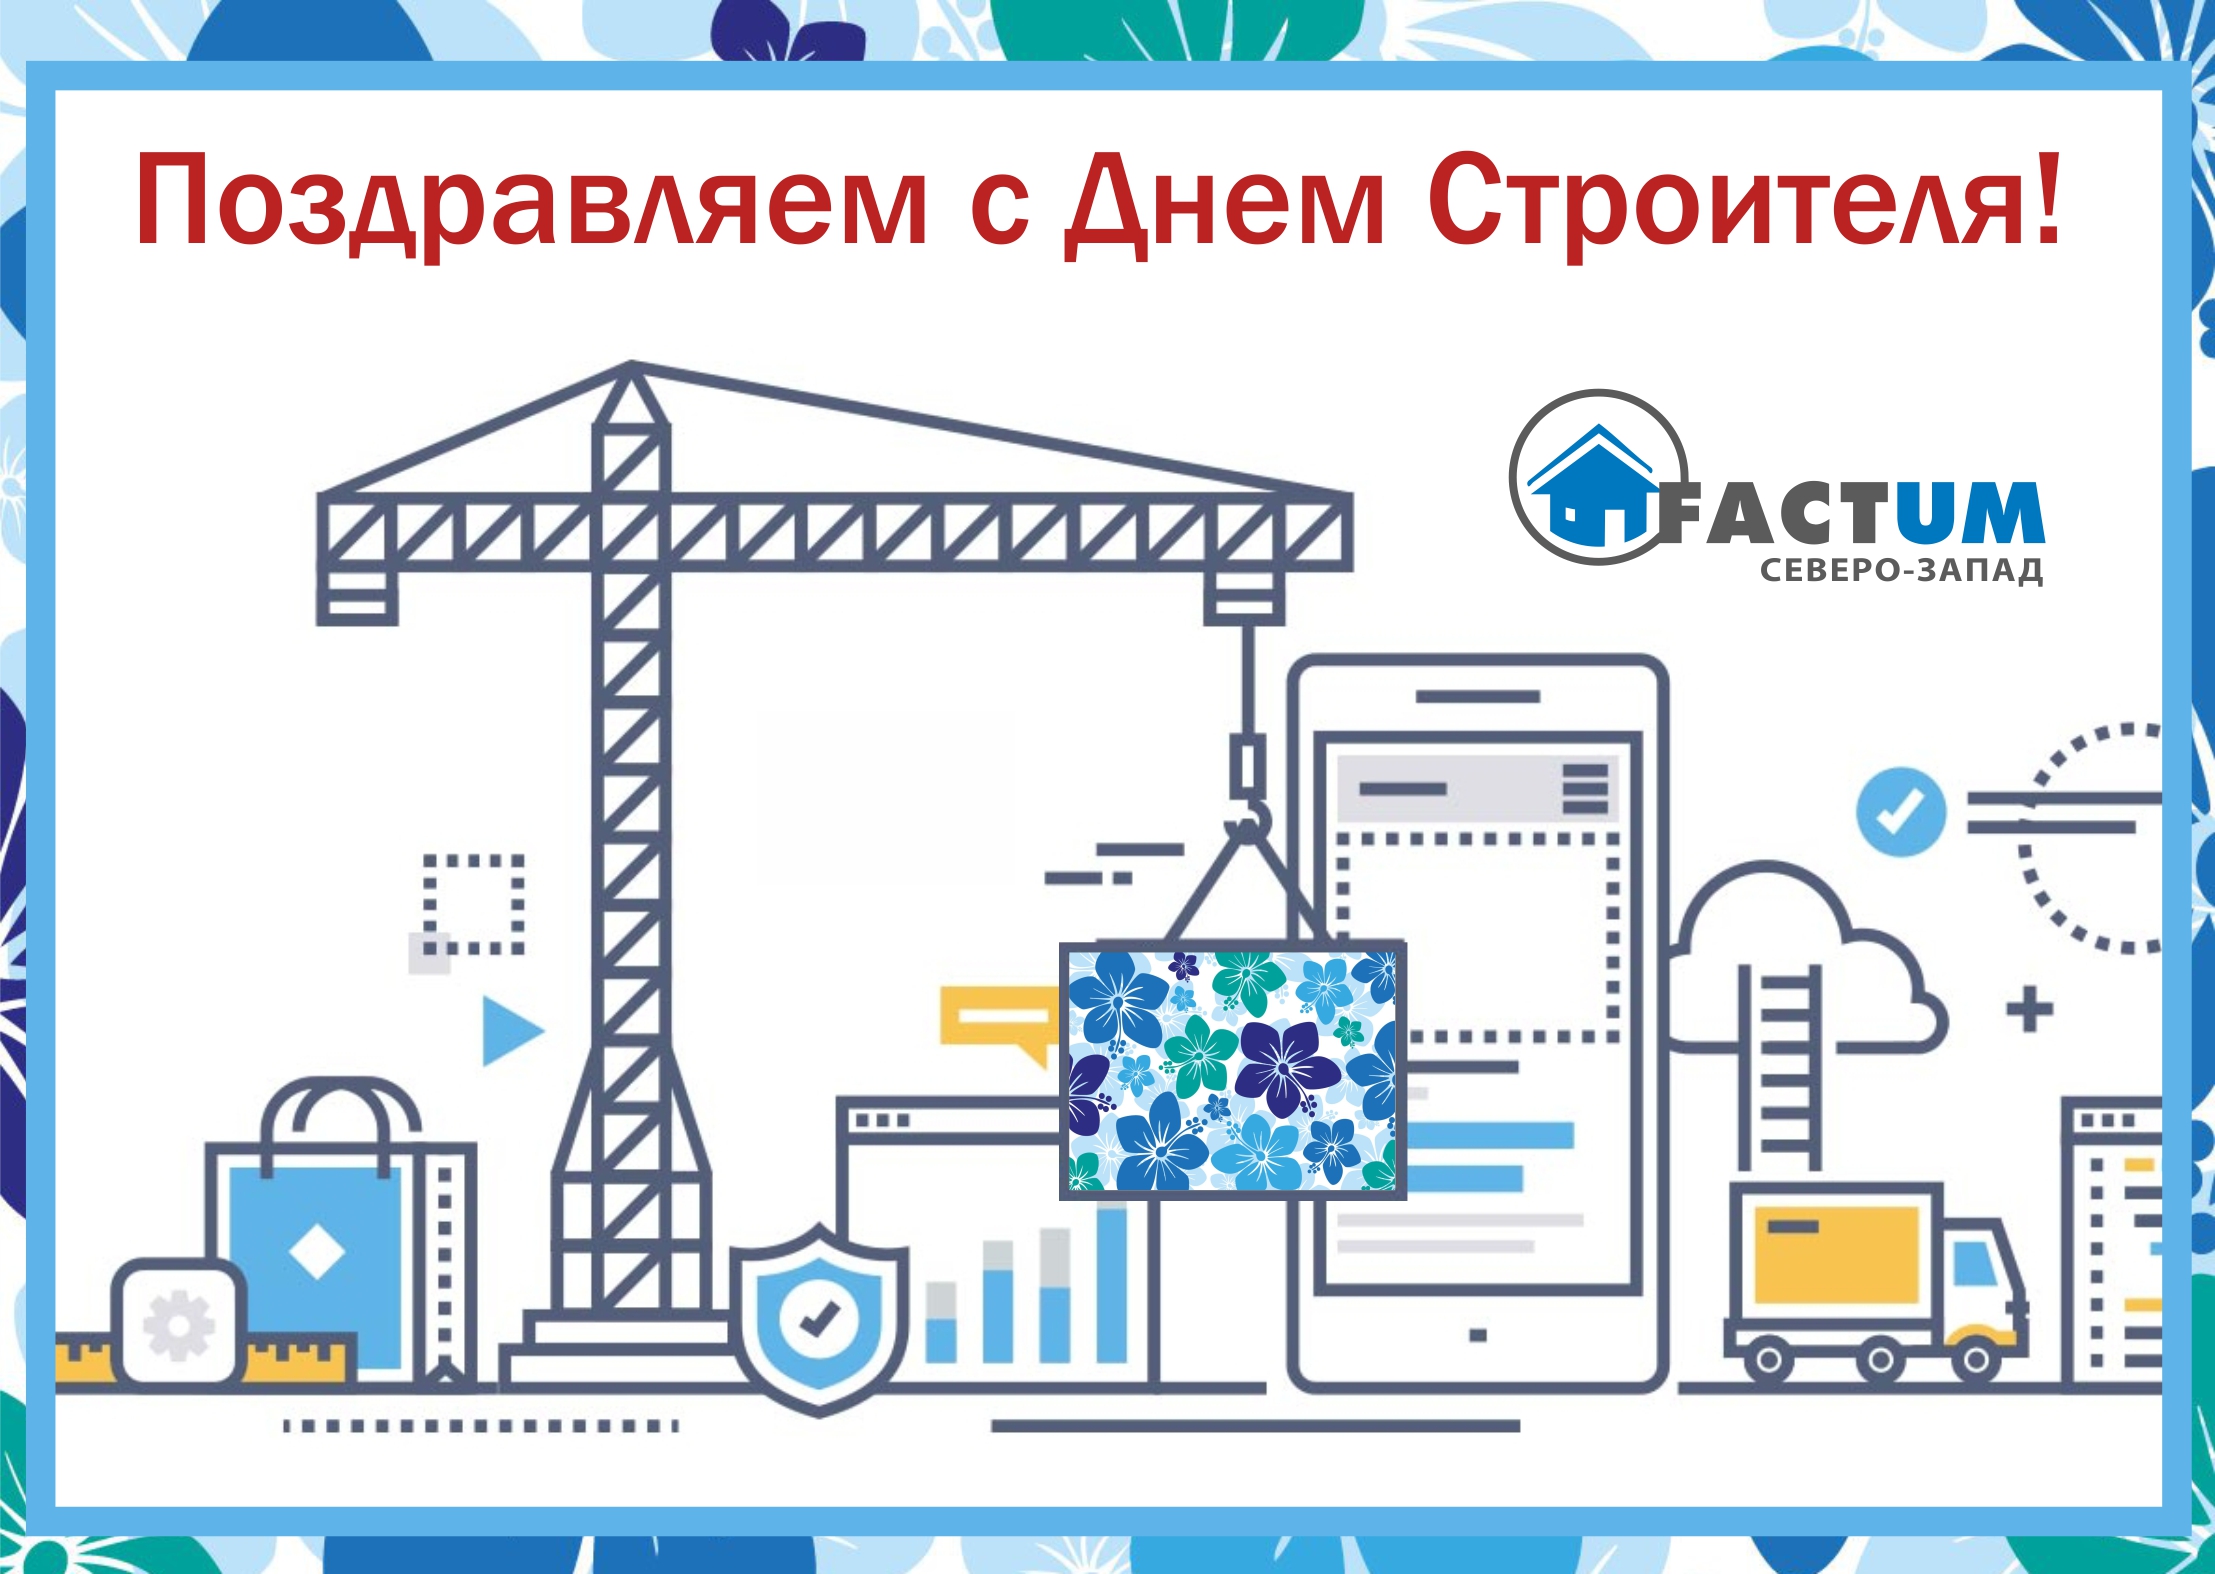 2 Компания «Фактум Северо-Запад», Санкт-Петербург | Кровент